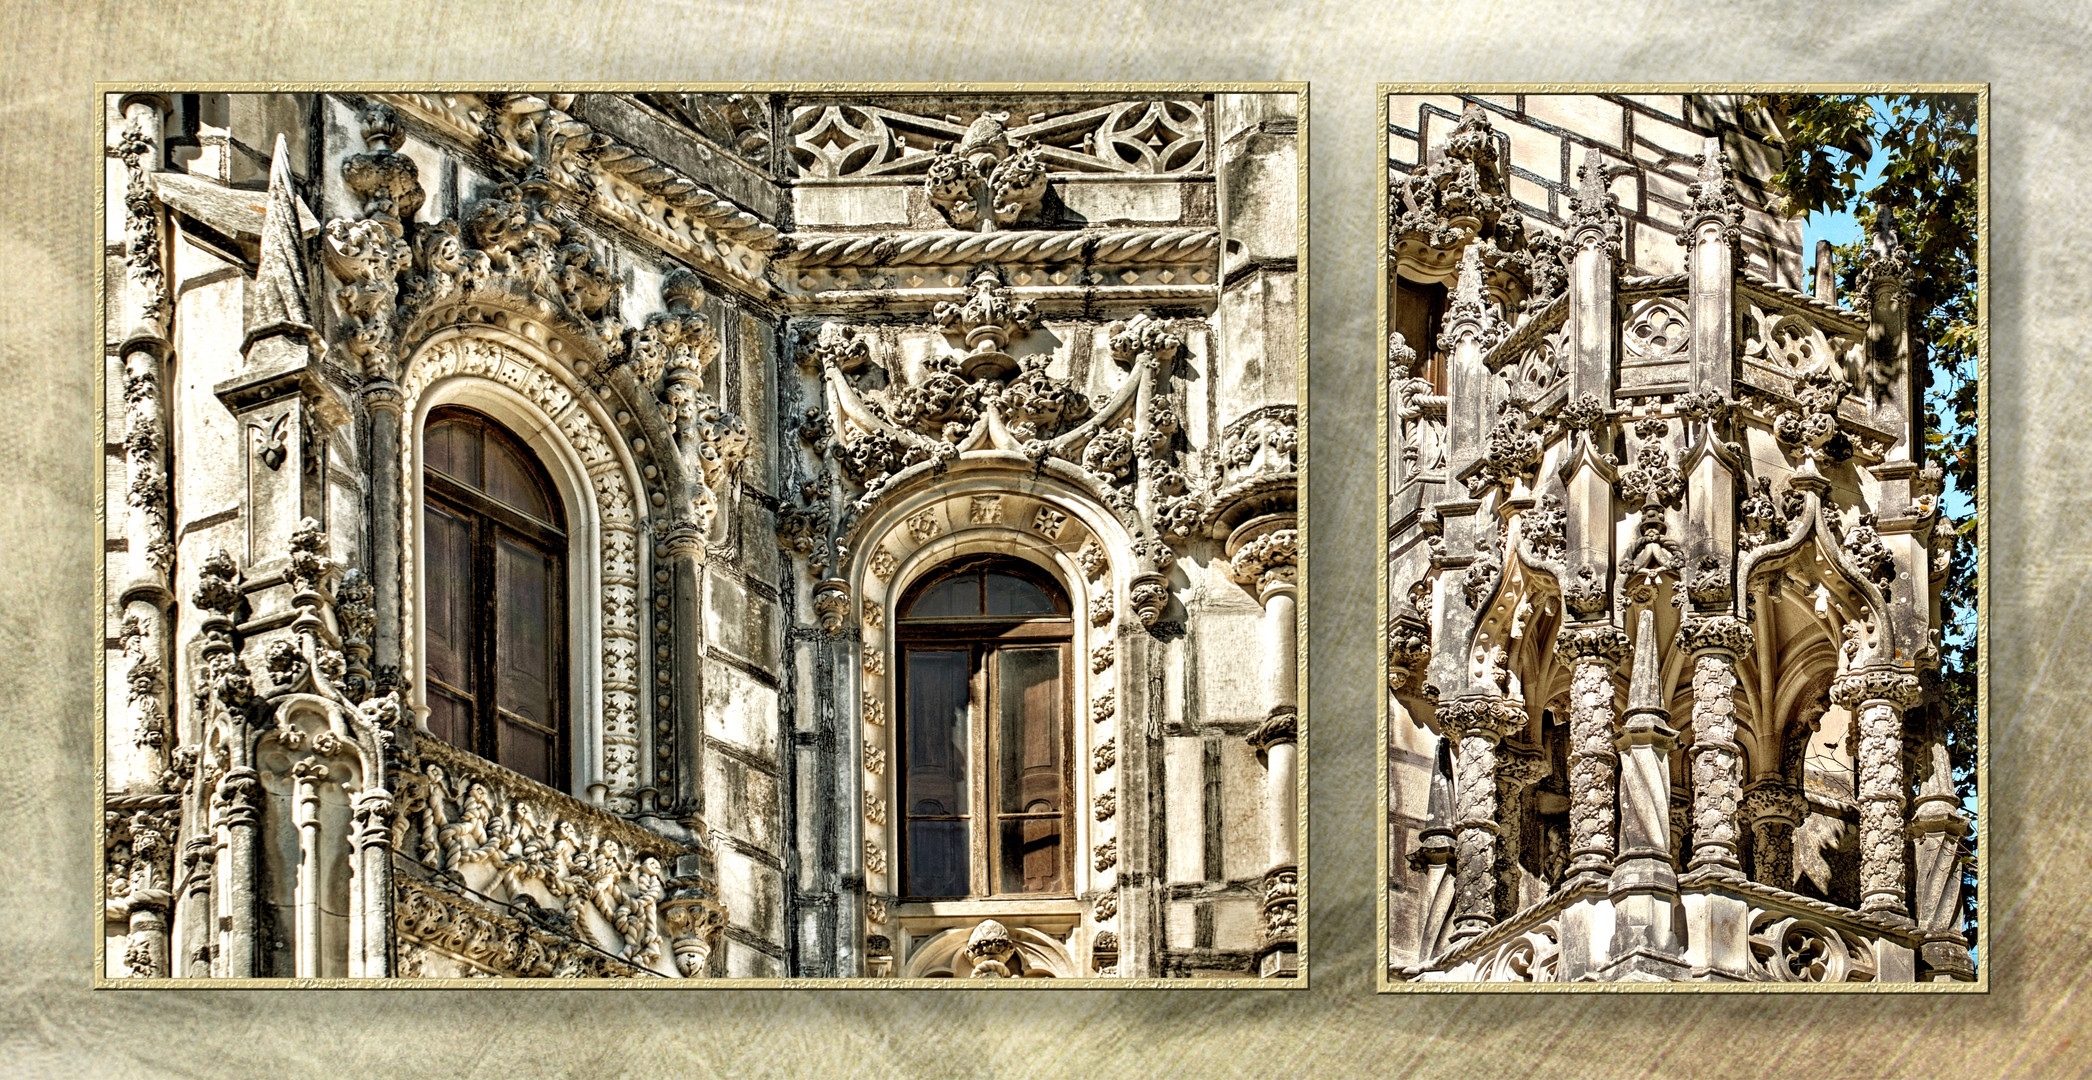 Balcones del palacio en la Quinta da Regaleira. Sintra